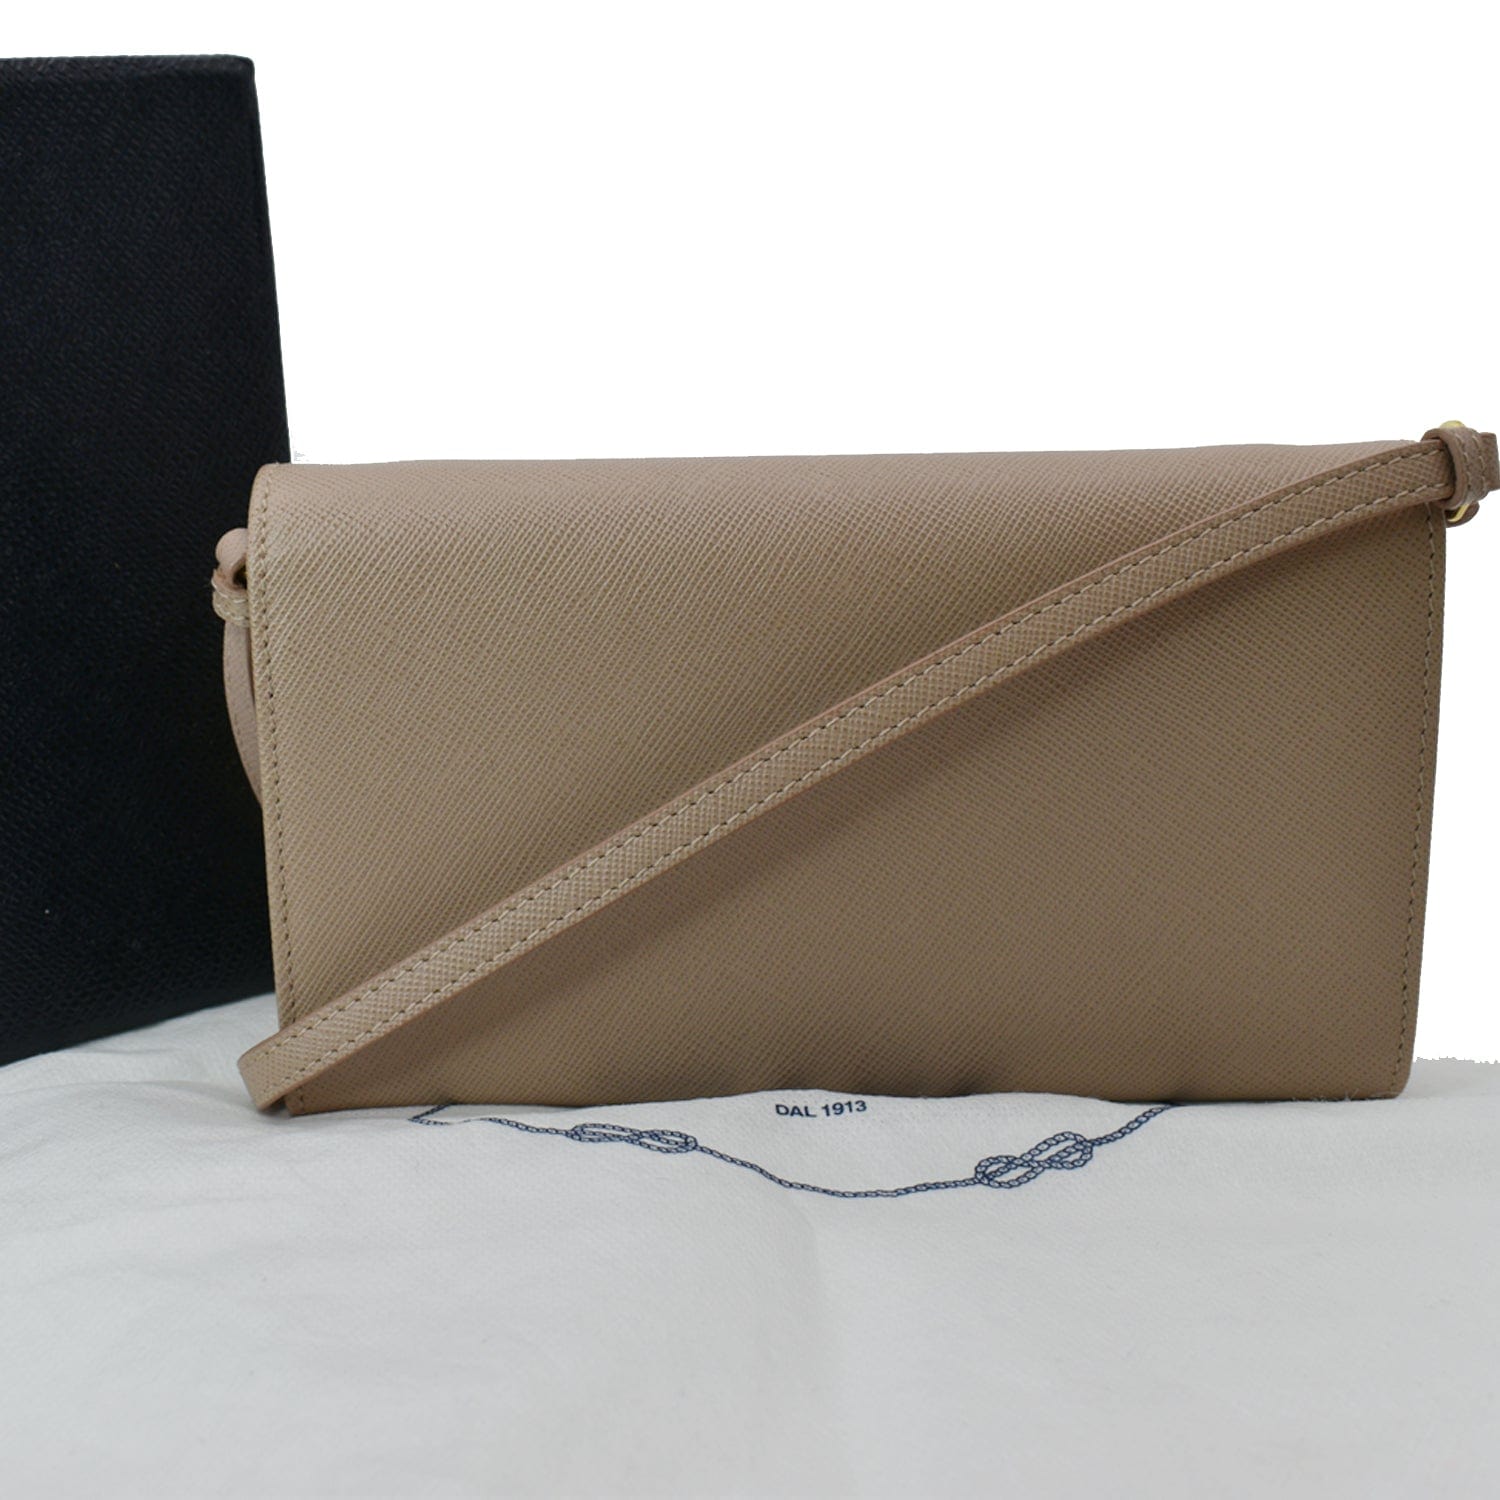 Saffiano Leather Mini Bag, Prada